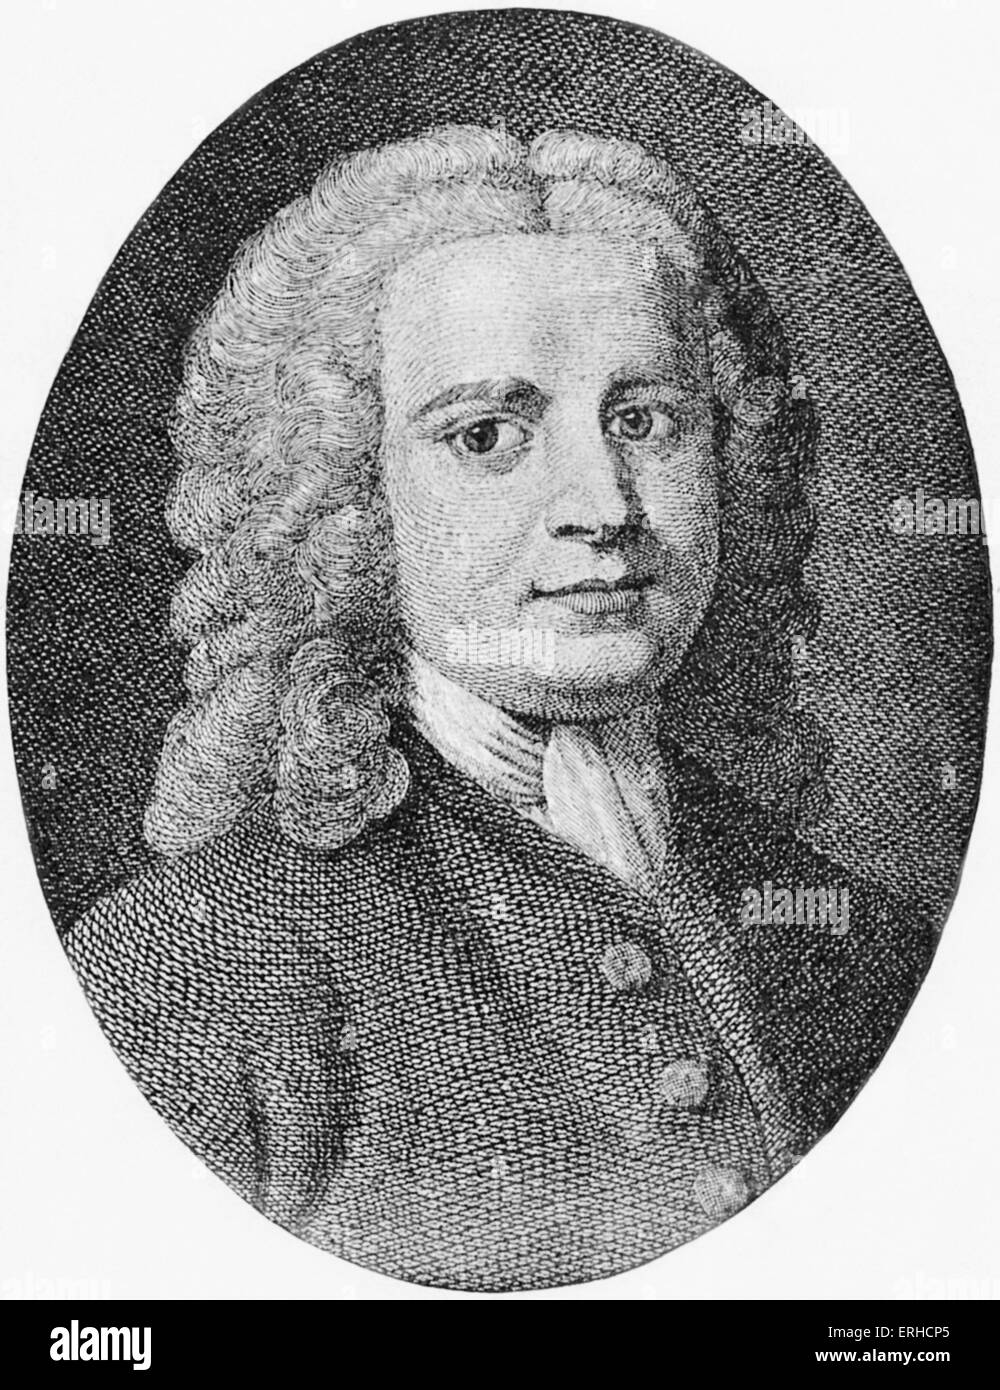 David Hartley, portrait. Philosophe et auteur anglais, 8 août 1705 - 28 août 1757. Après la gravure de William Blake. Banque D'Images